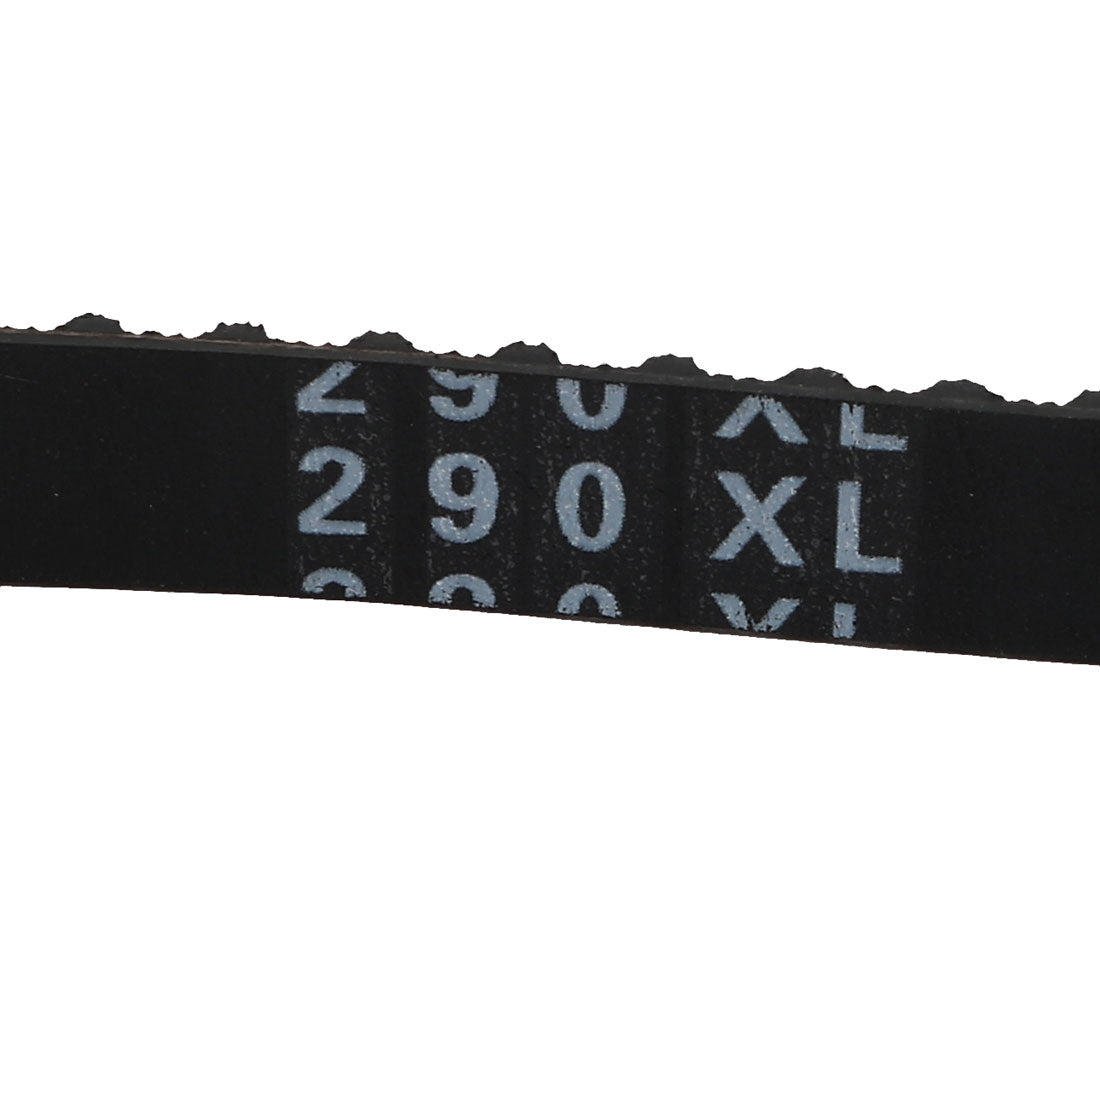 uxcell Uxcell 290XL 145 Teeth Stepper Timing Belt Geared-Belt 736.6mm Perimeter 10mm Width